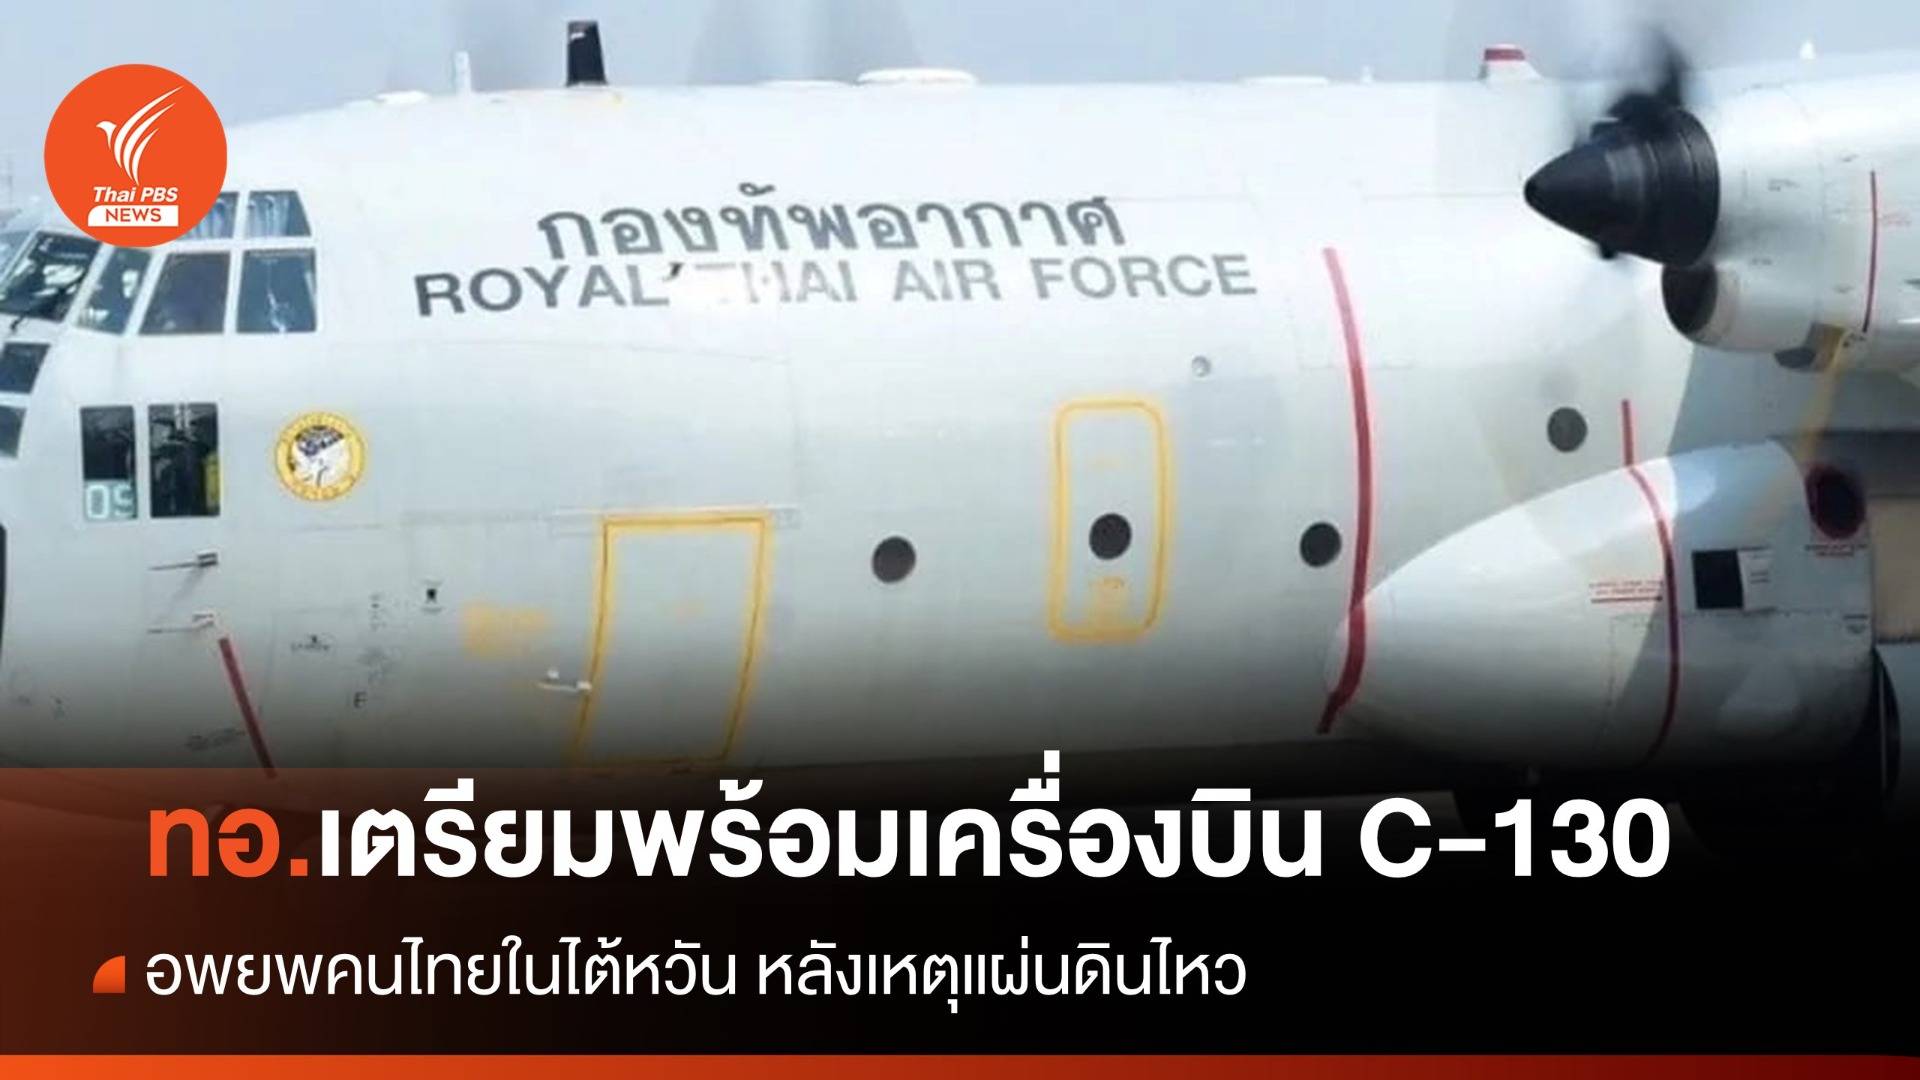 ทอ.เตรียมเครื่องบิน C-130 พร้อมอพยพคนไทยในไต้หวัน